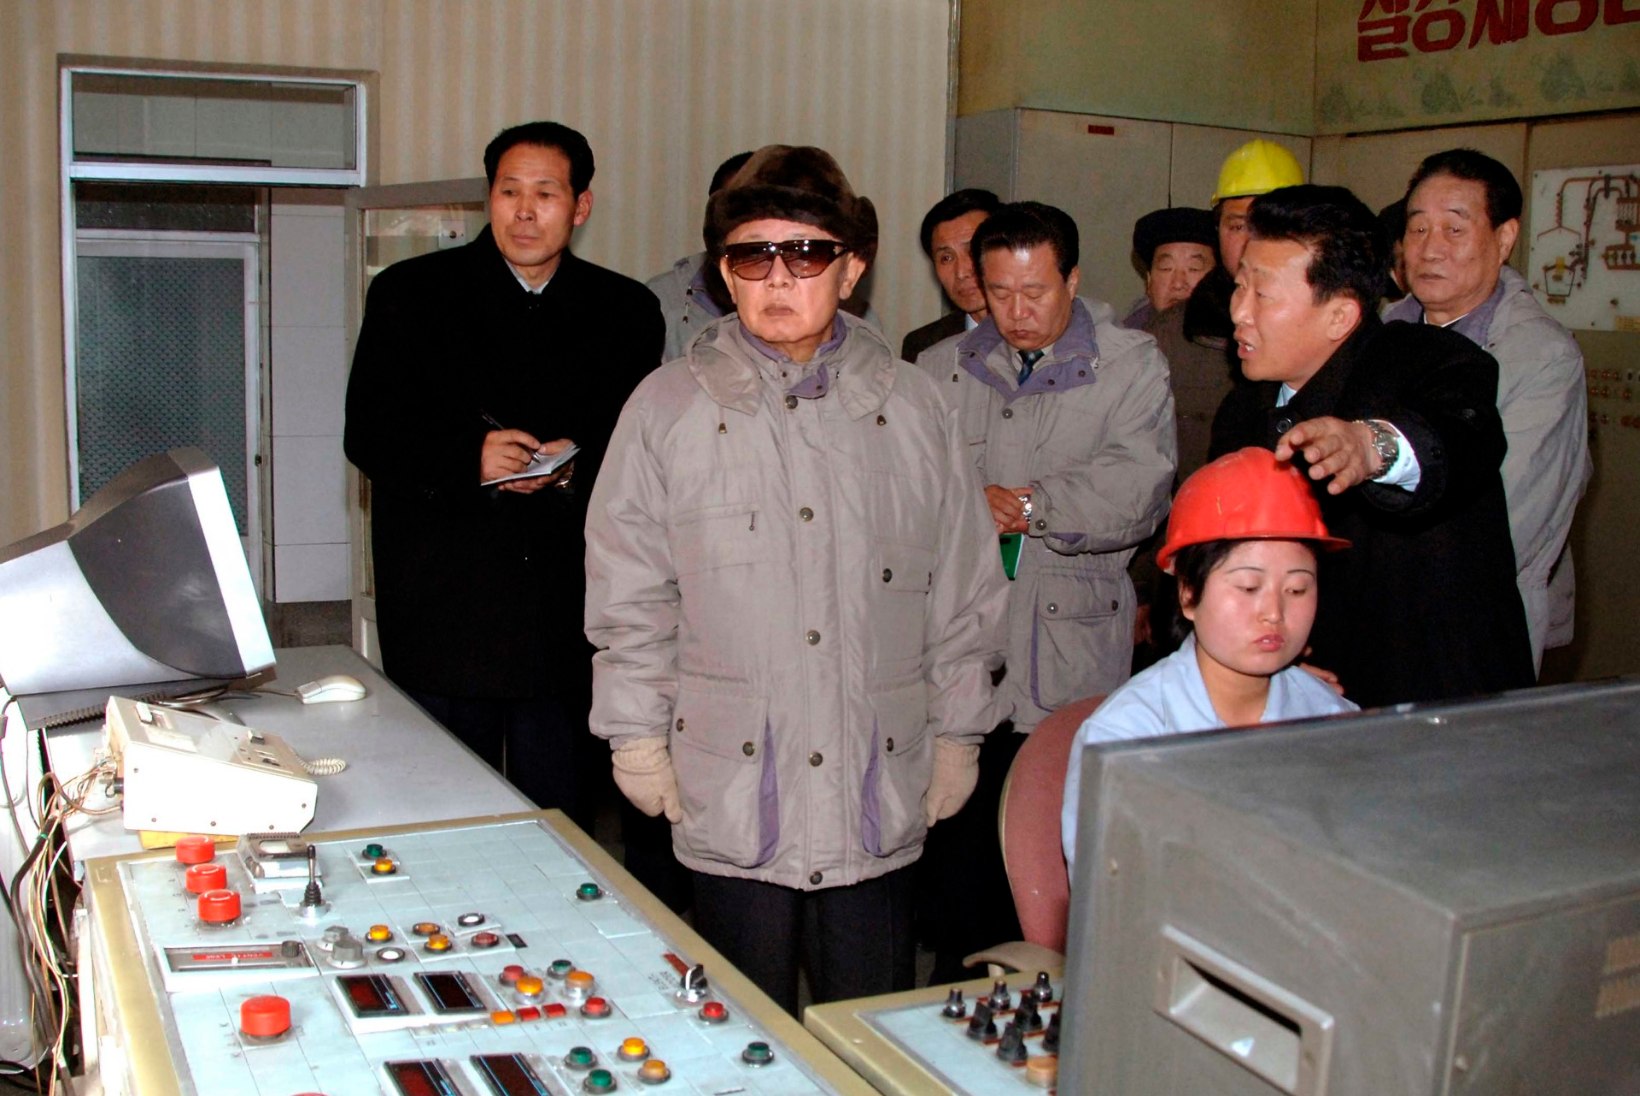 Kumb vaatab asju paremini – Taavi Rõivas või Kim Jong-il?